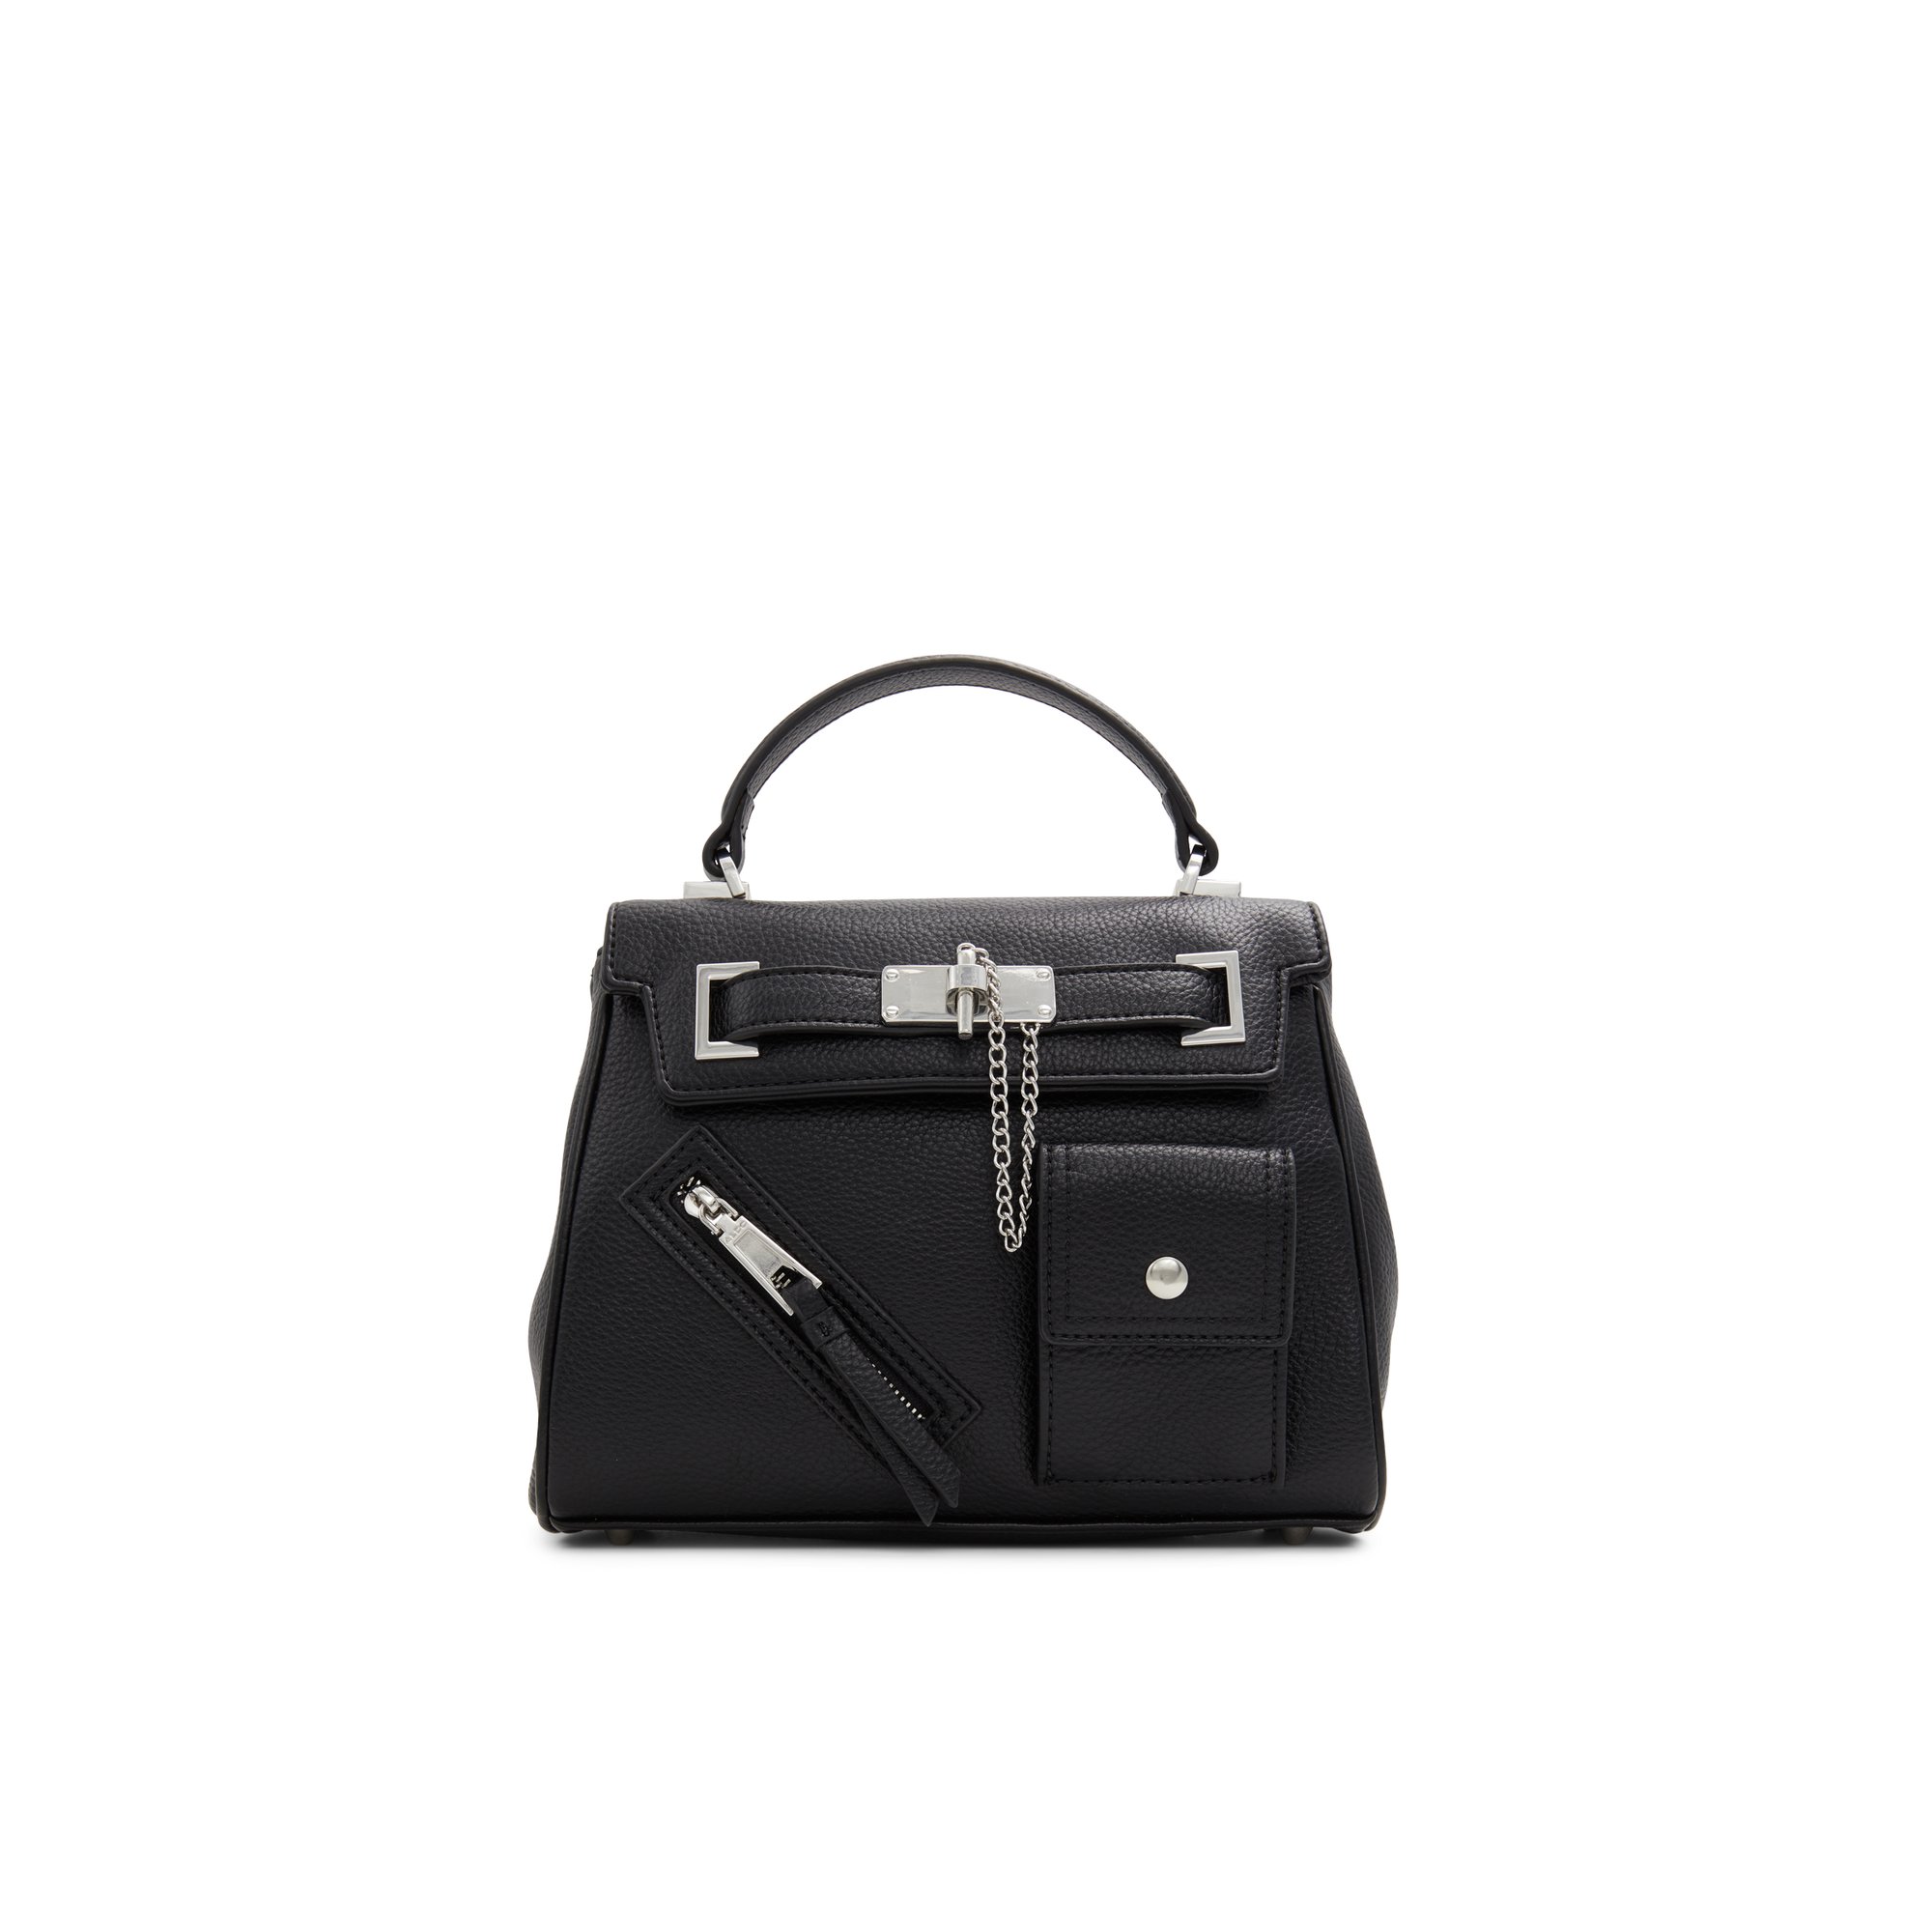 ALDO Berthax - Women's Top Handle Handbag - Black